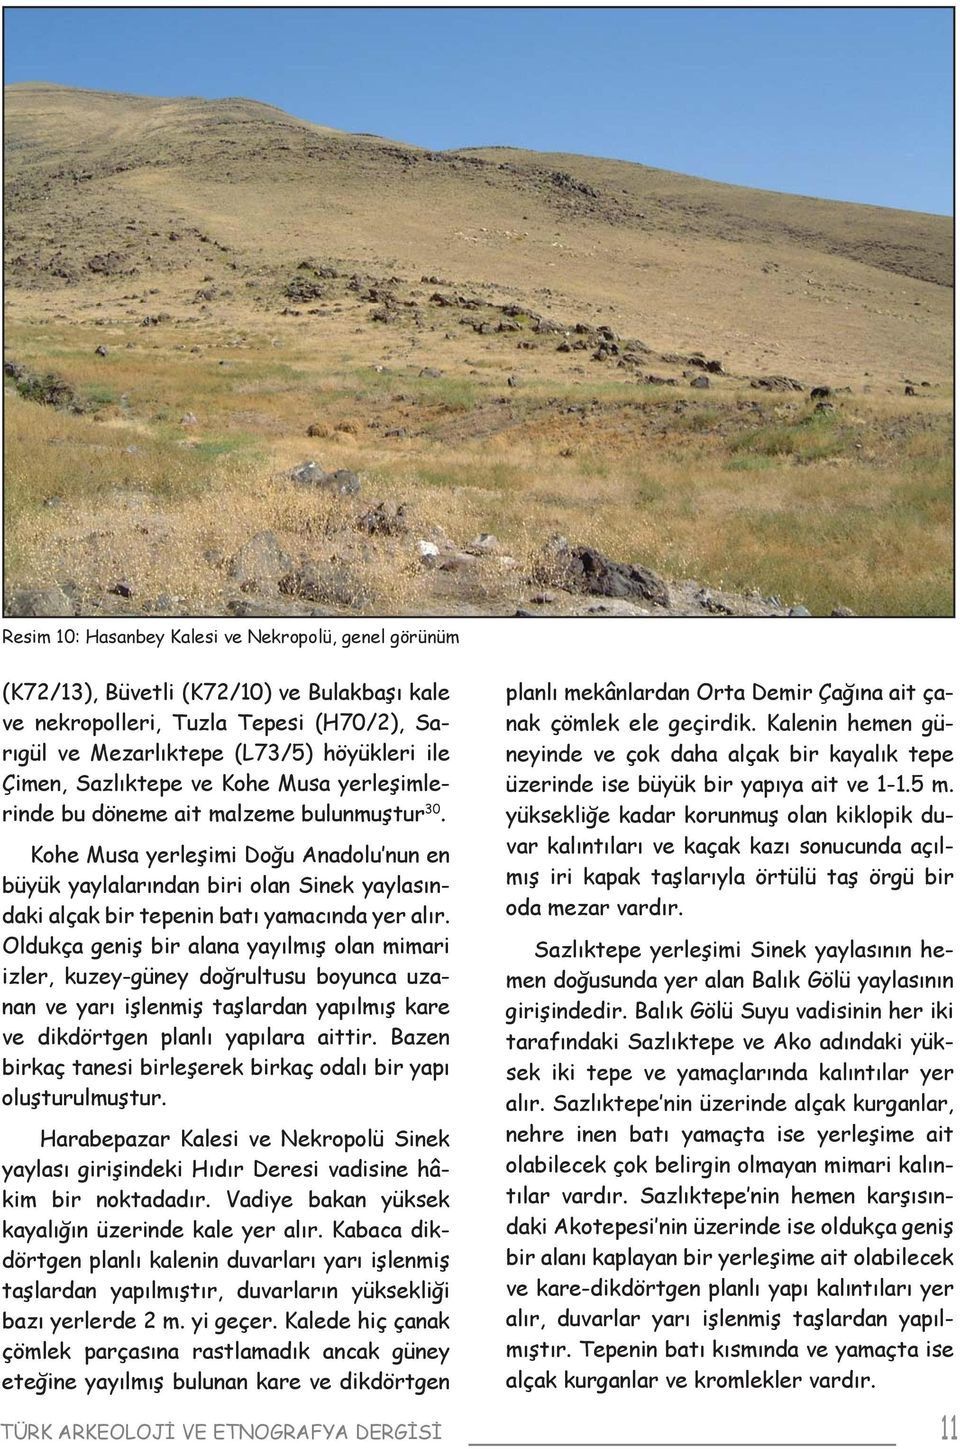 Kohe Musa yerleşimi Doğu Anadolu nun en büyük yaylalarından biri olan Sinek yaylasındaki alçak bir tepenin batı yamacında yer alır.